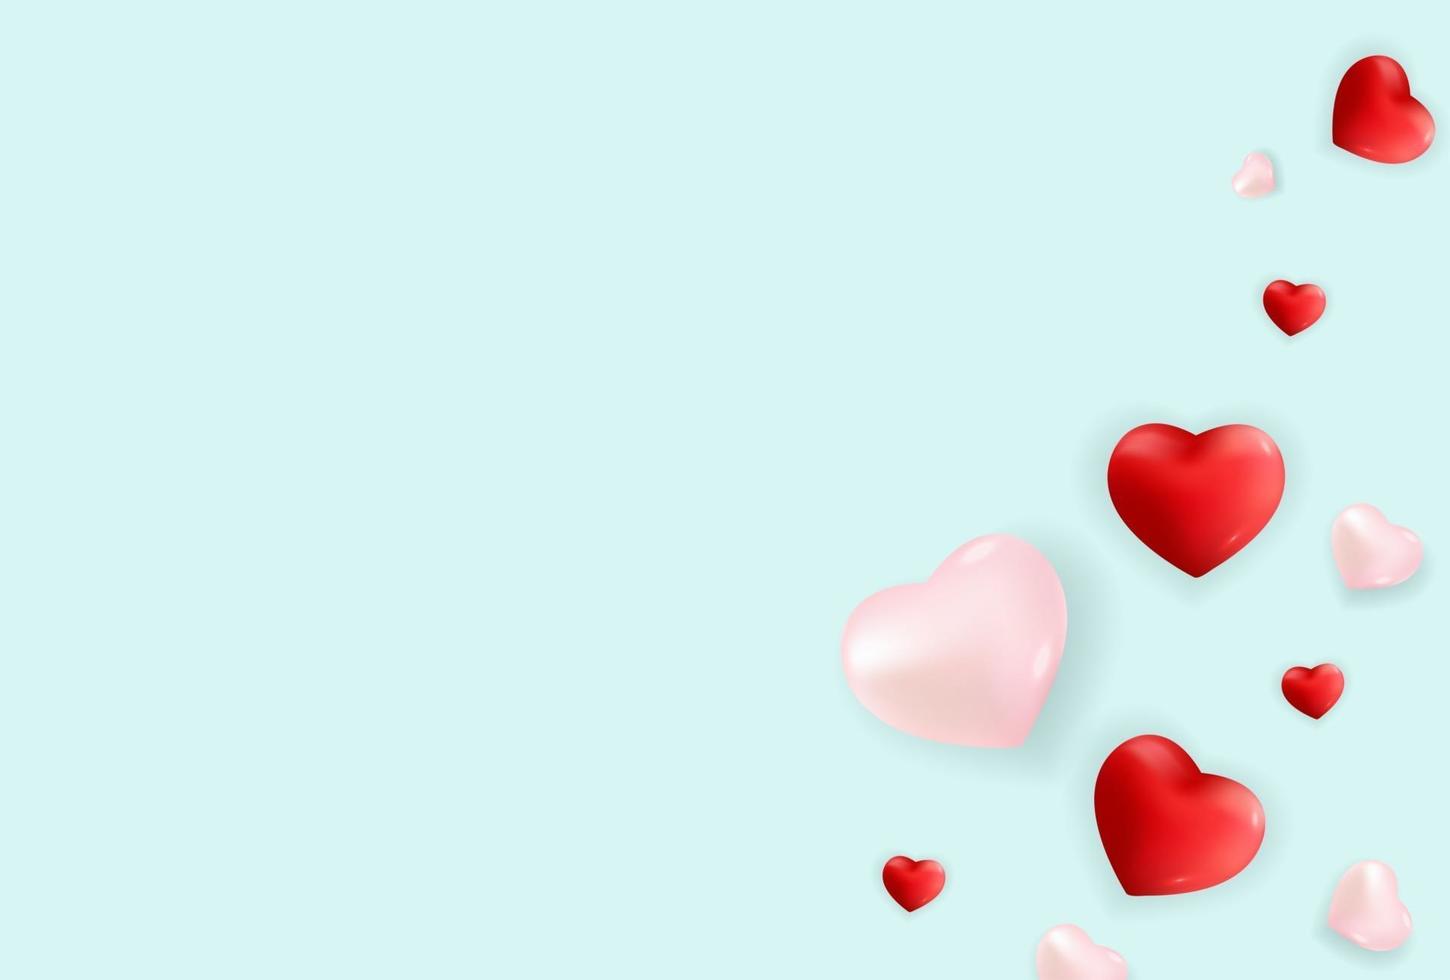 Alla hjärtans dag kärlek och känslor helg försäljning bakgrundsdesign. vektor illustration